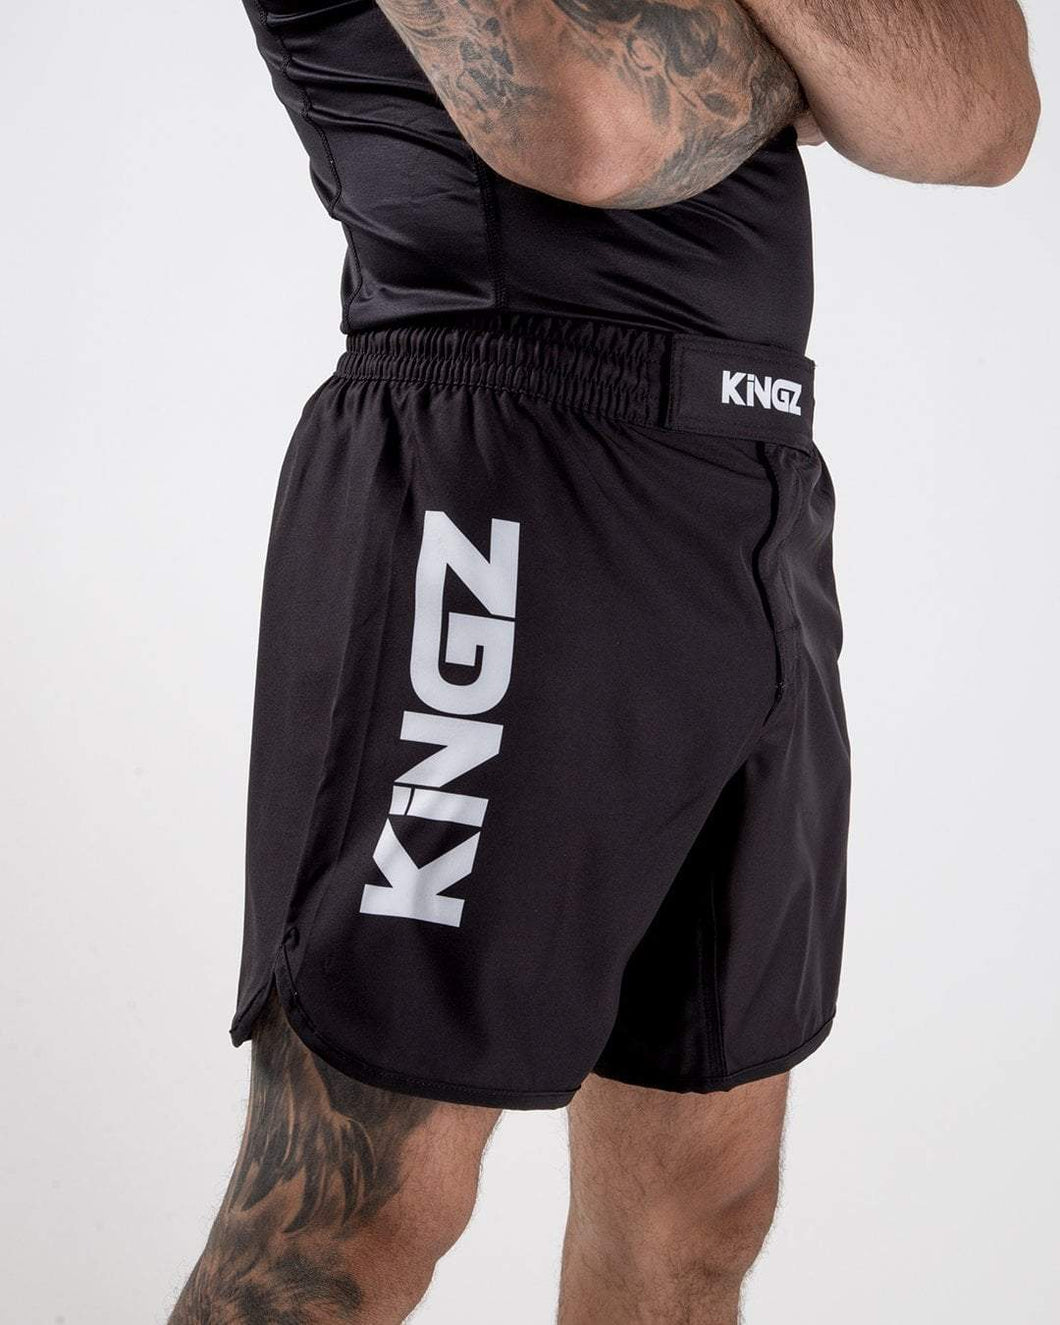 Kingz- Kore Shorts